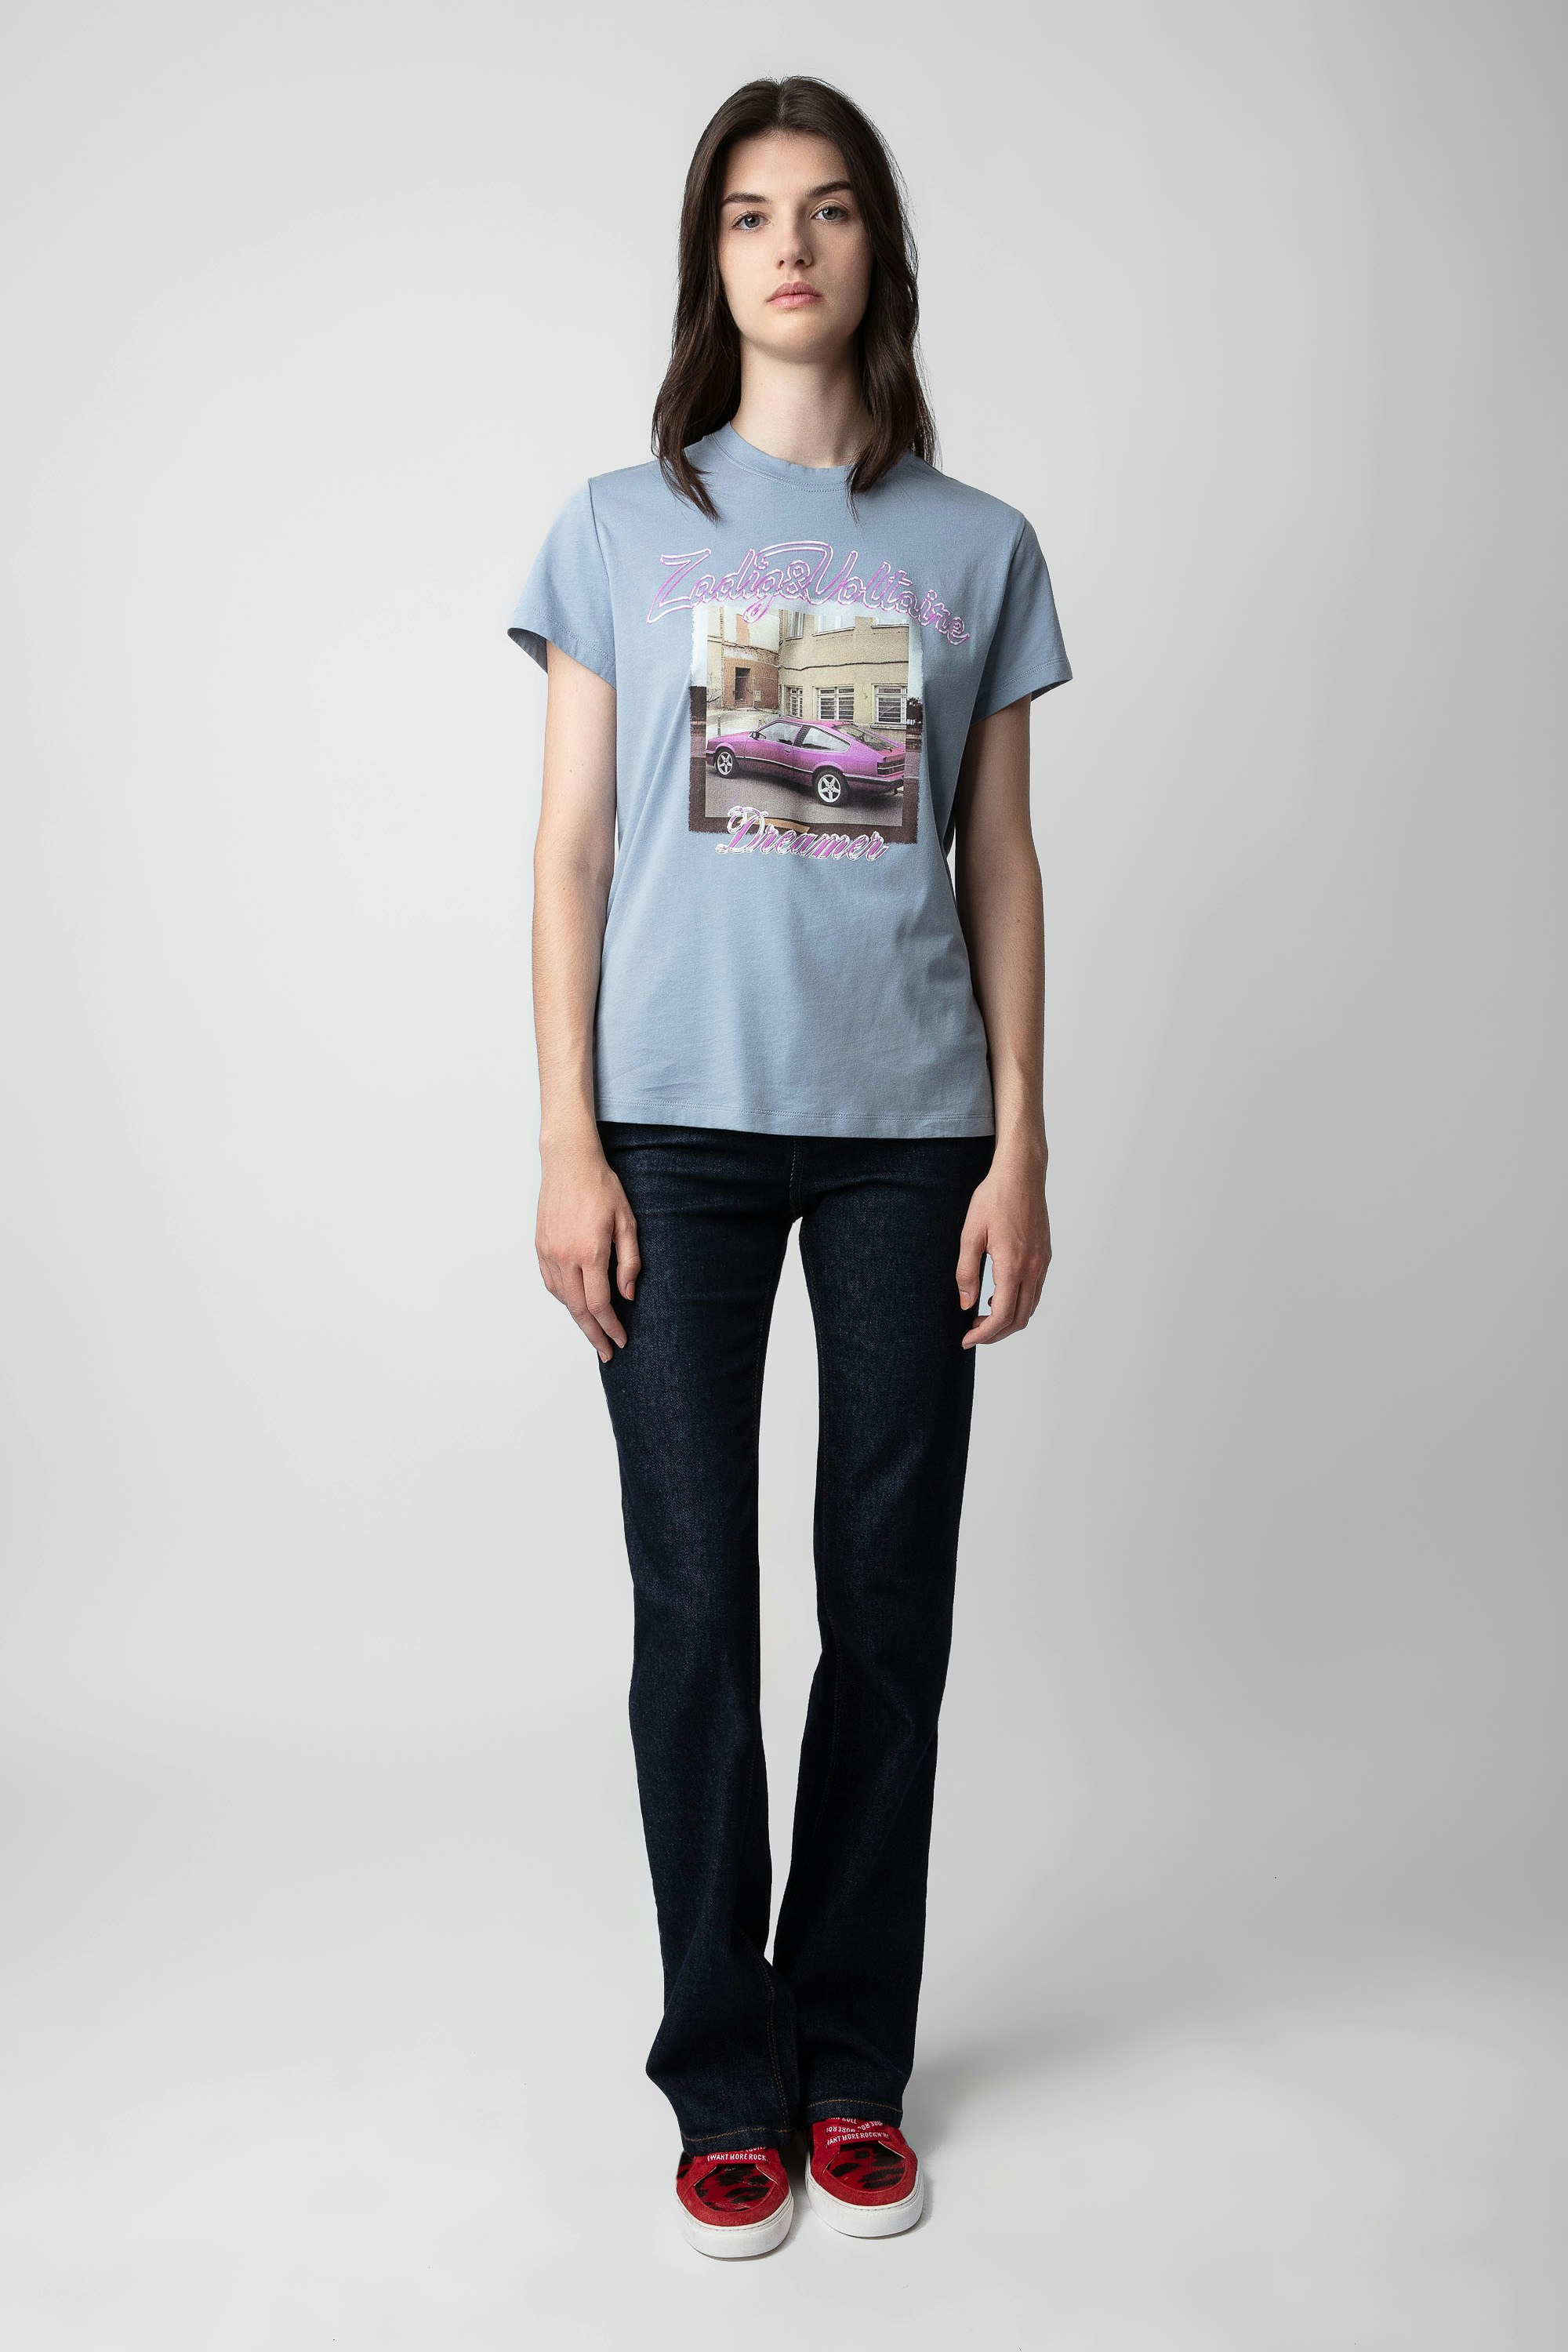 T-shirt Zoe Stampa fotografica - T-shirt da donna in cotone azzurro decorata con una stampa fotografica Pink Car.